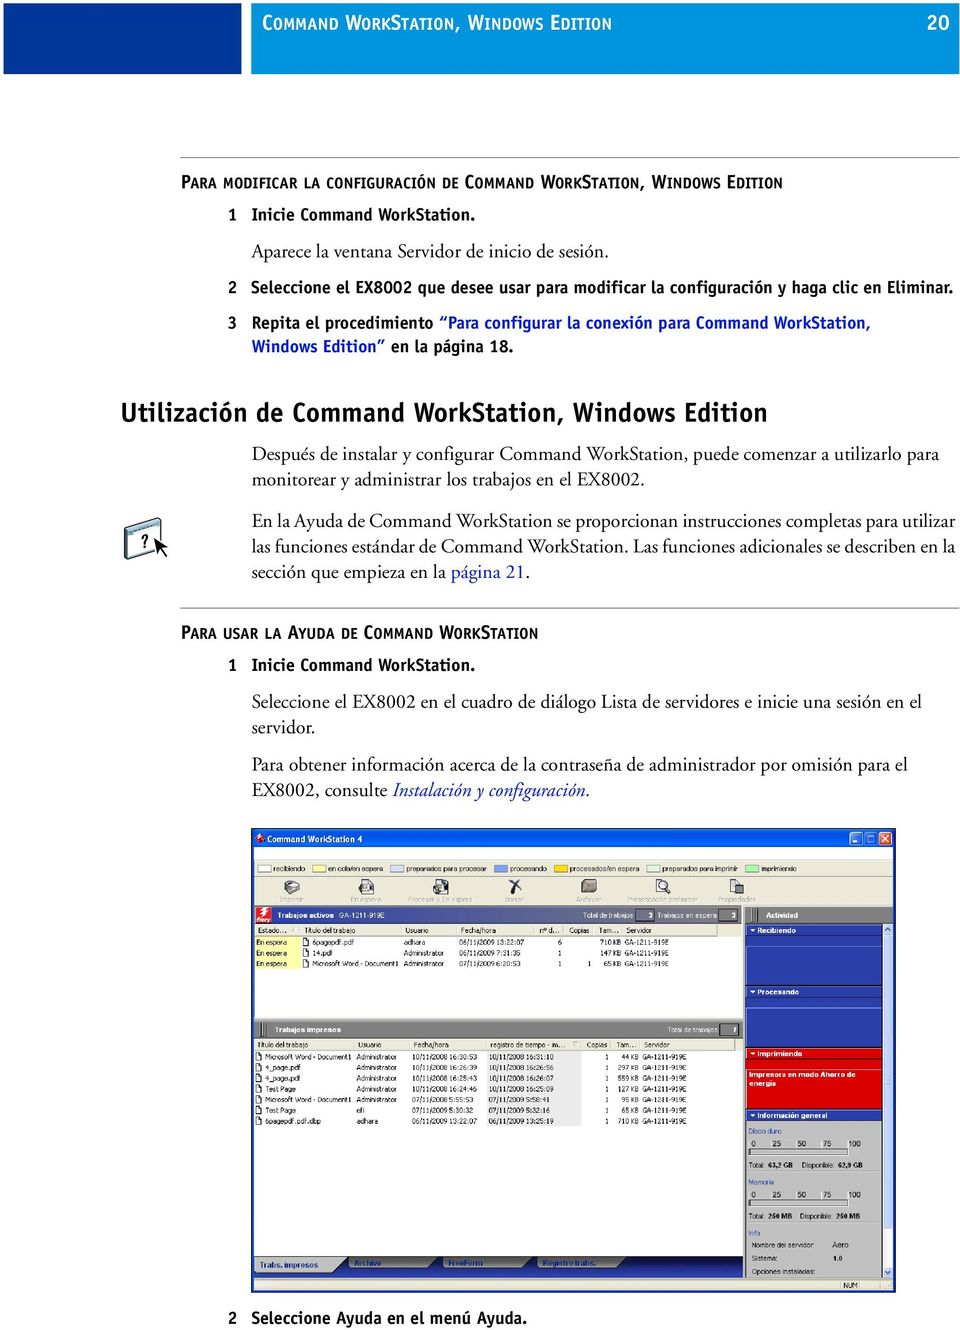 3 Repita el procedimiento Para configurar la conexión para Command WorkStation, Windows Edition en la página 18.